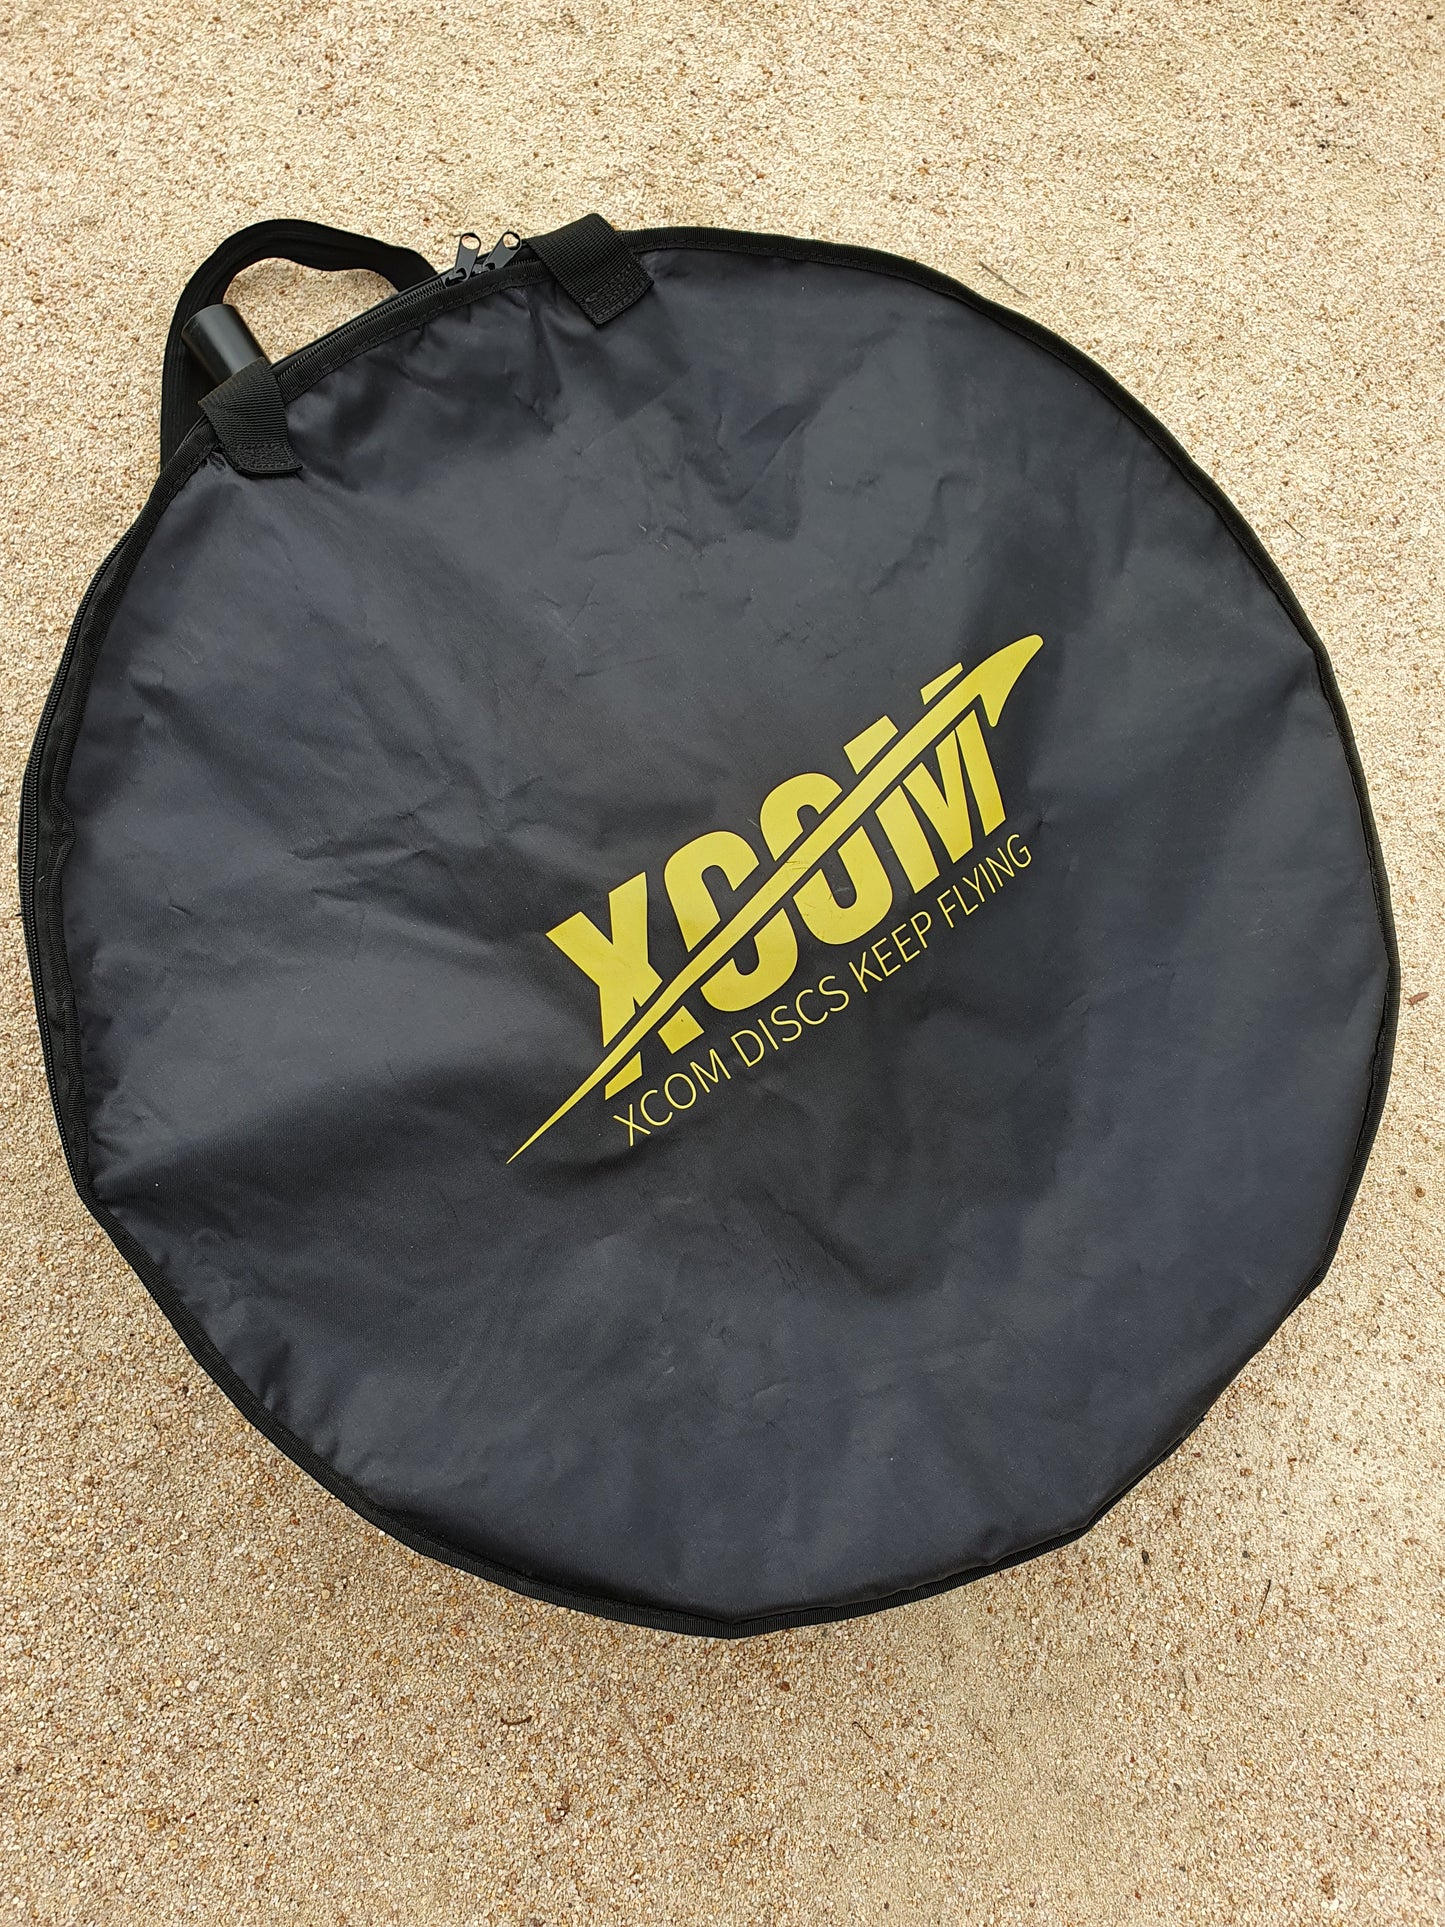 XCOM Ultralite basket + carry bag